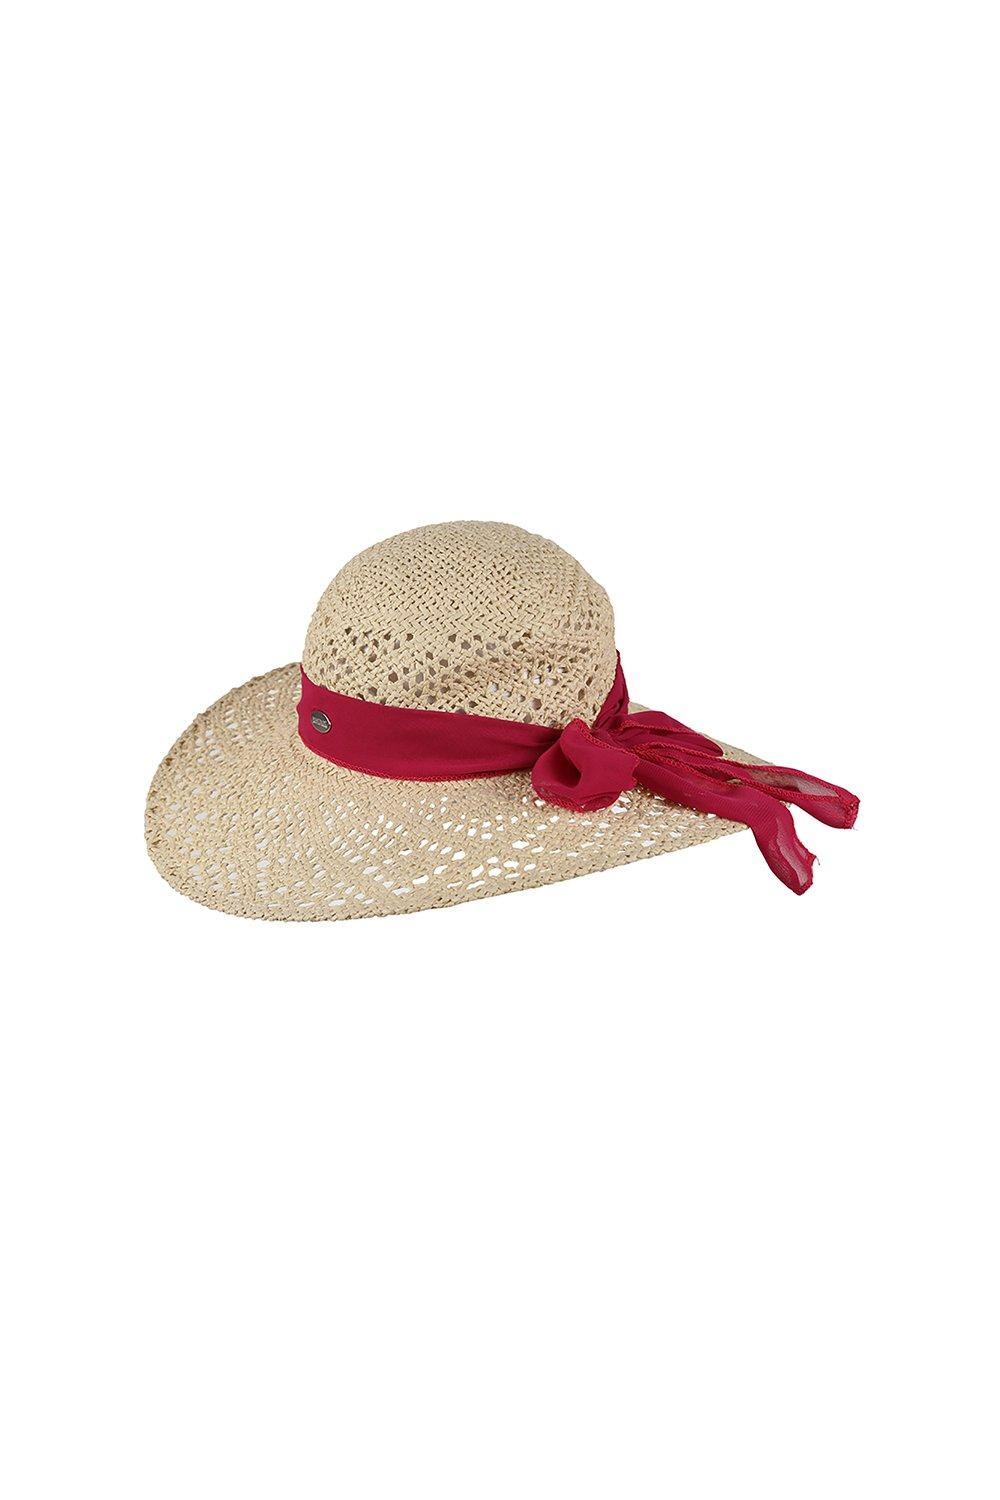 'Taura III' Соломенная бумажная шляпа от солнца Regatta, белый детская летняя широкополая уличная шляпа с защитой от уф лучей солнцезащитная шляпа без козырька пляжная соломенная шляпа модная соломен